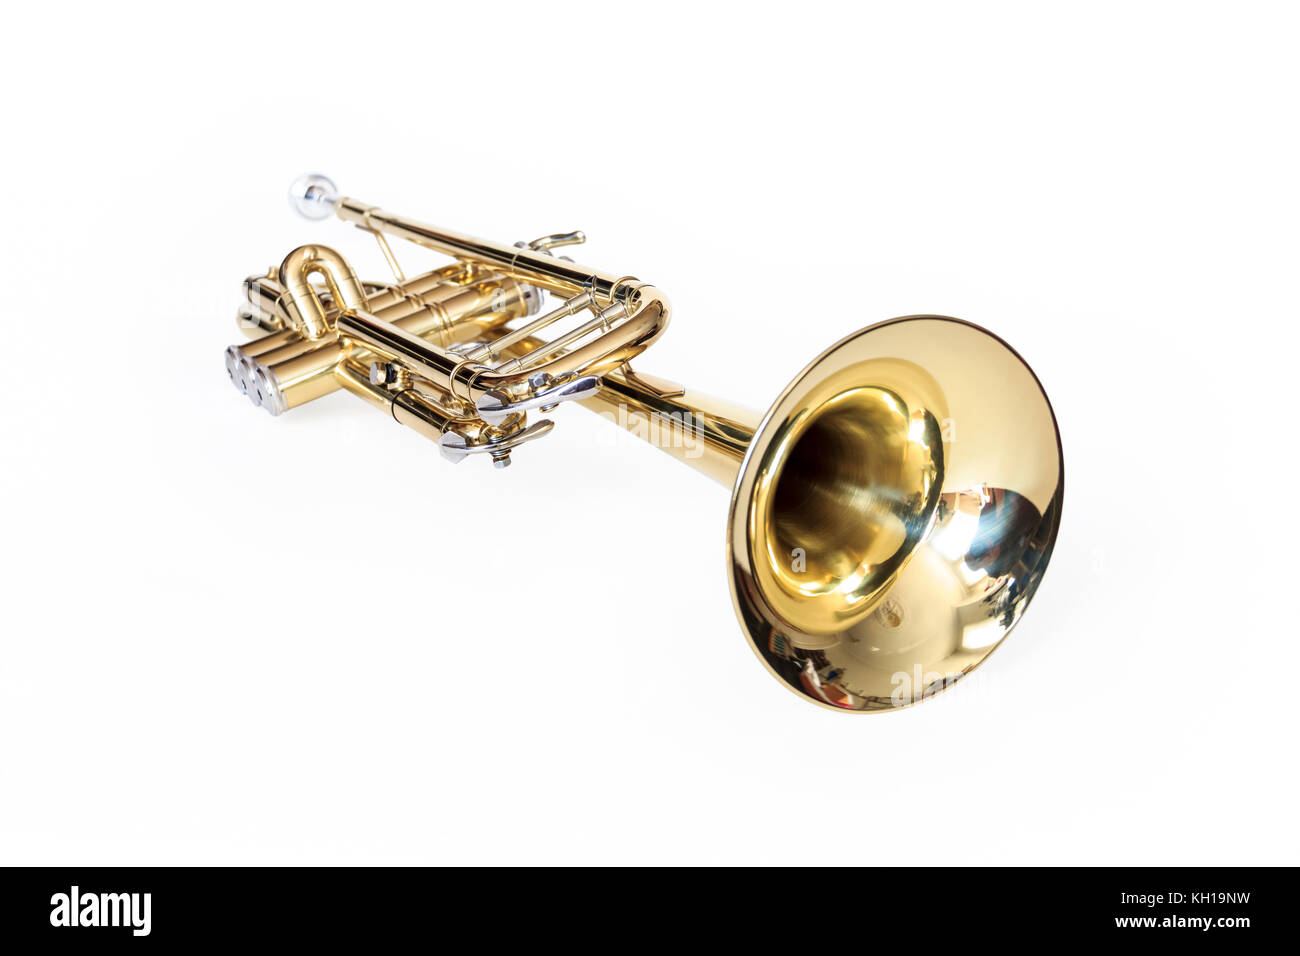 Una trompeta Bb lacadas en oro sobre un fondo blanco. Foto de stock